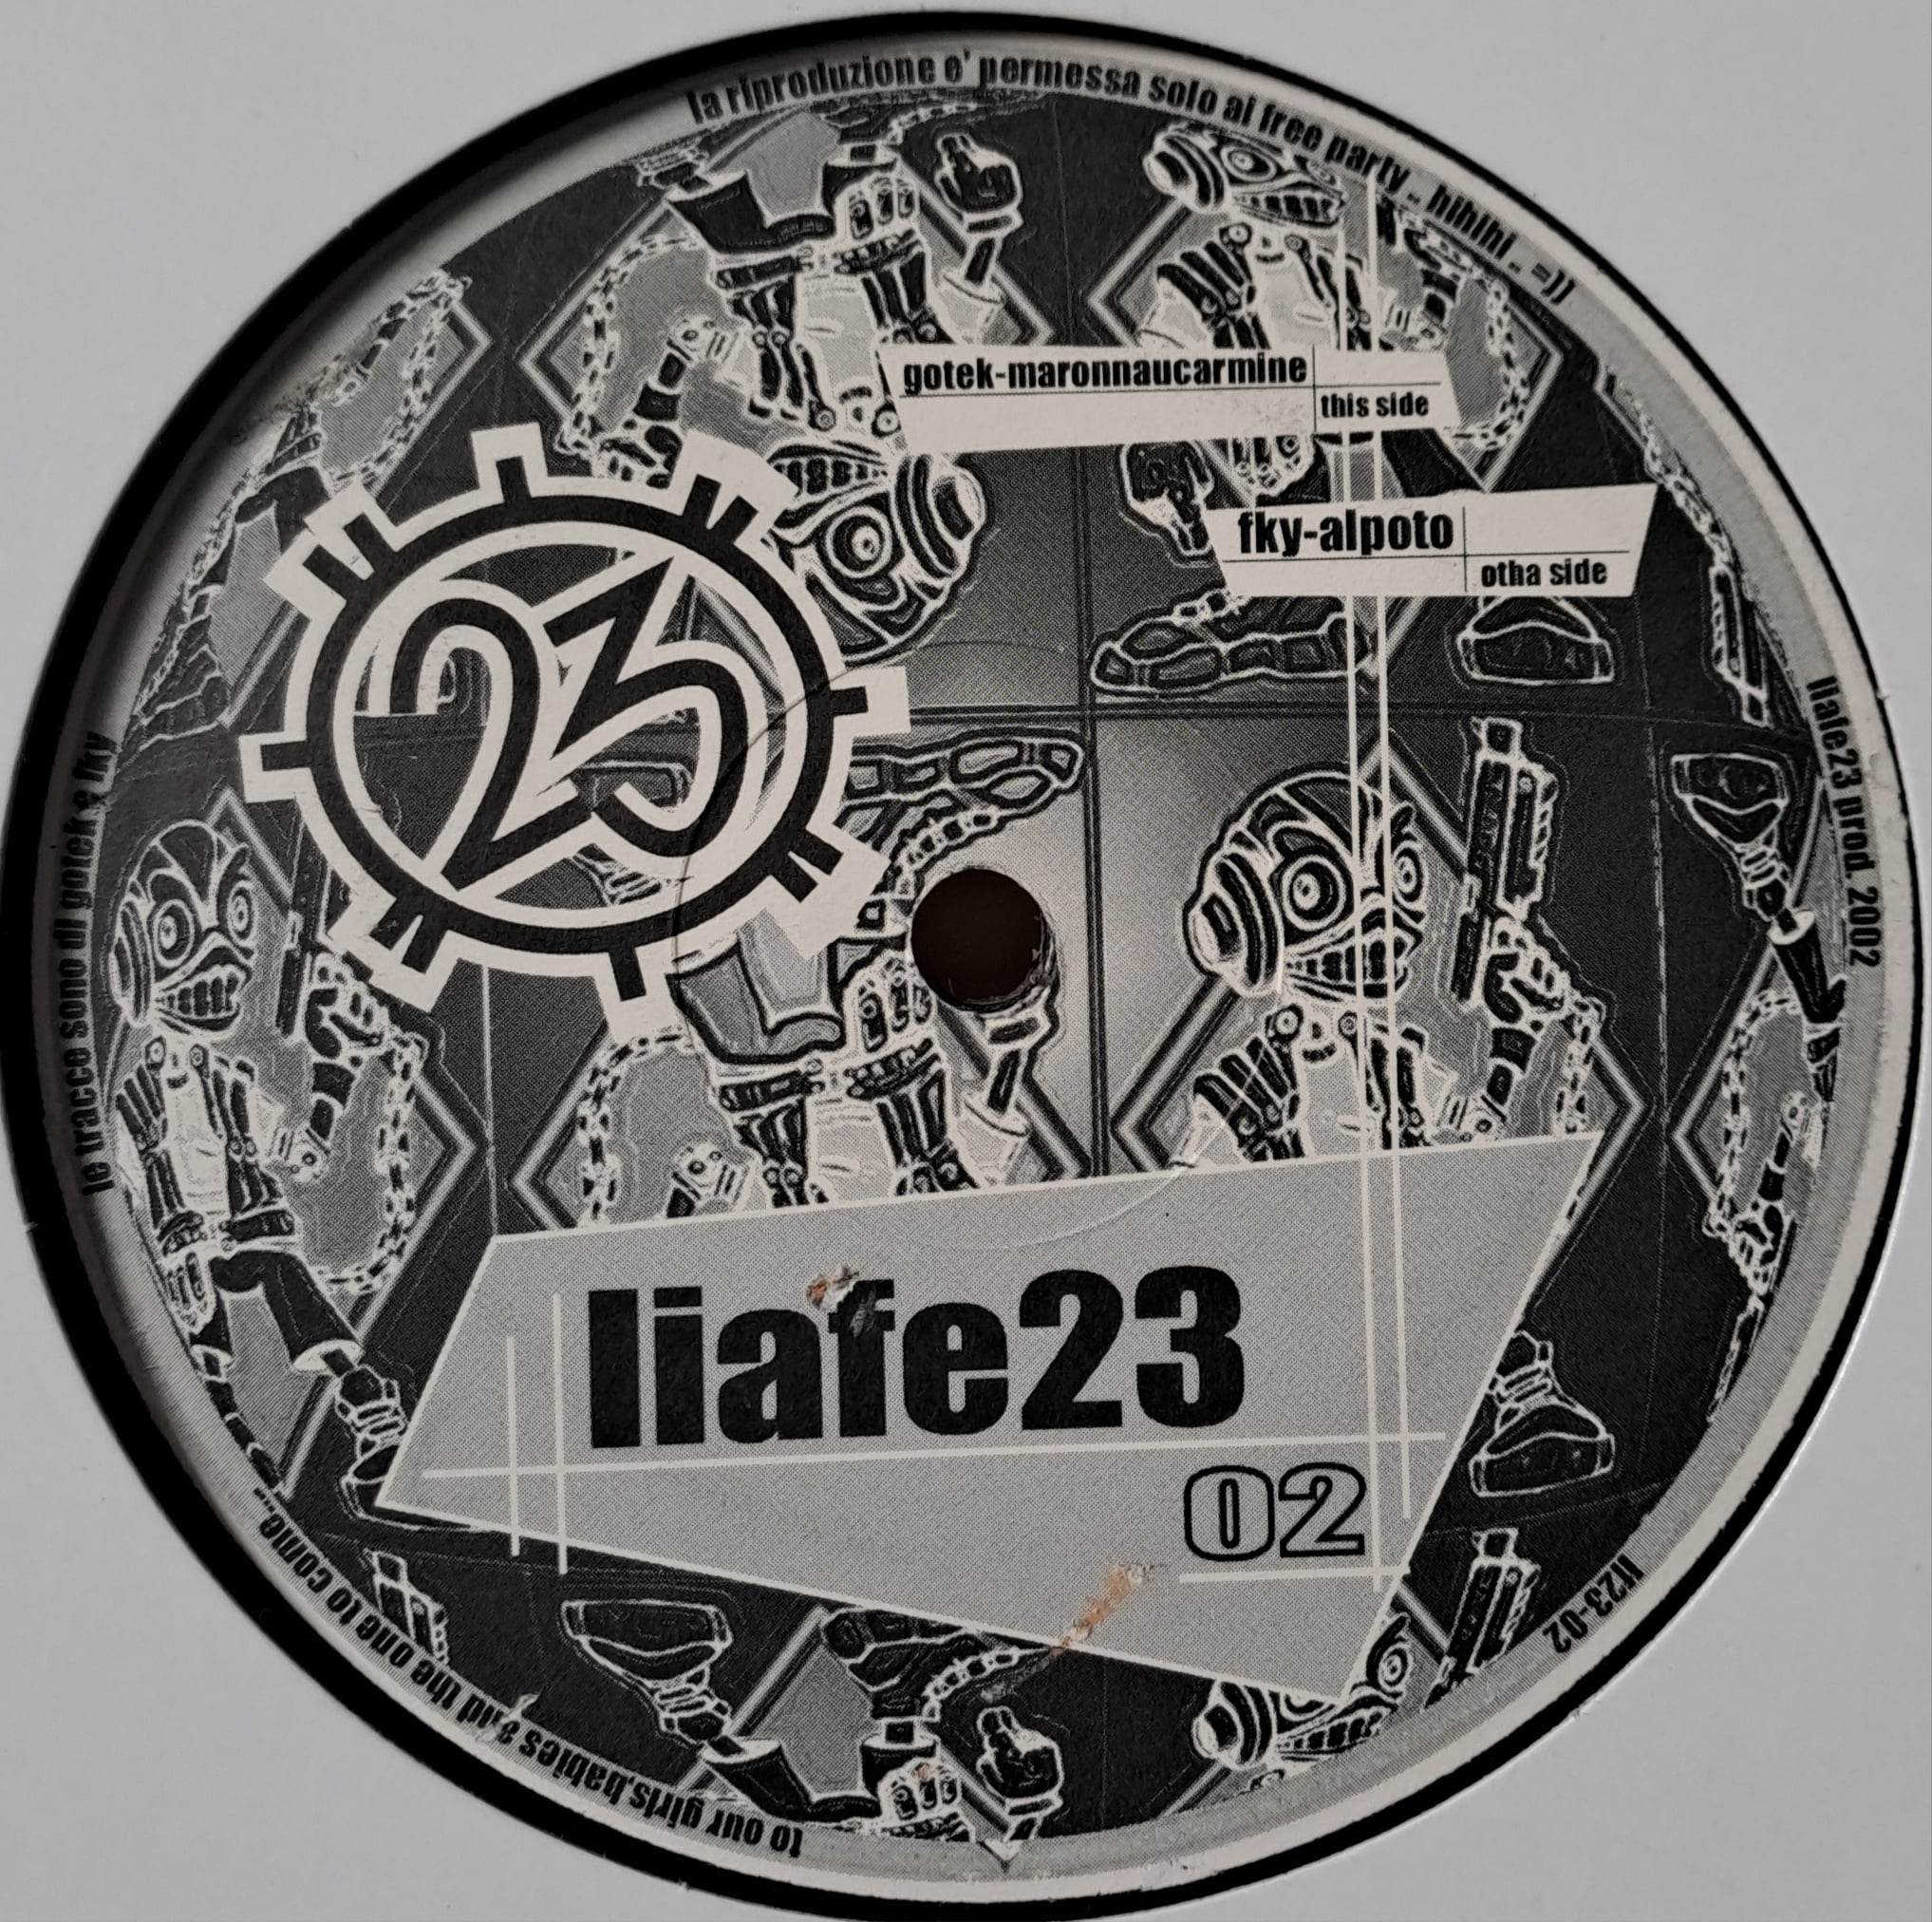 Liafe23 002 - vinyle freetekno